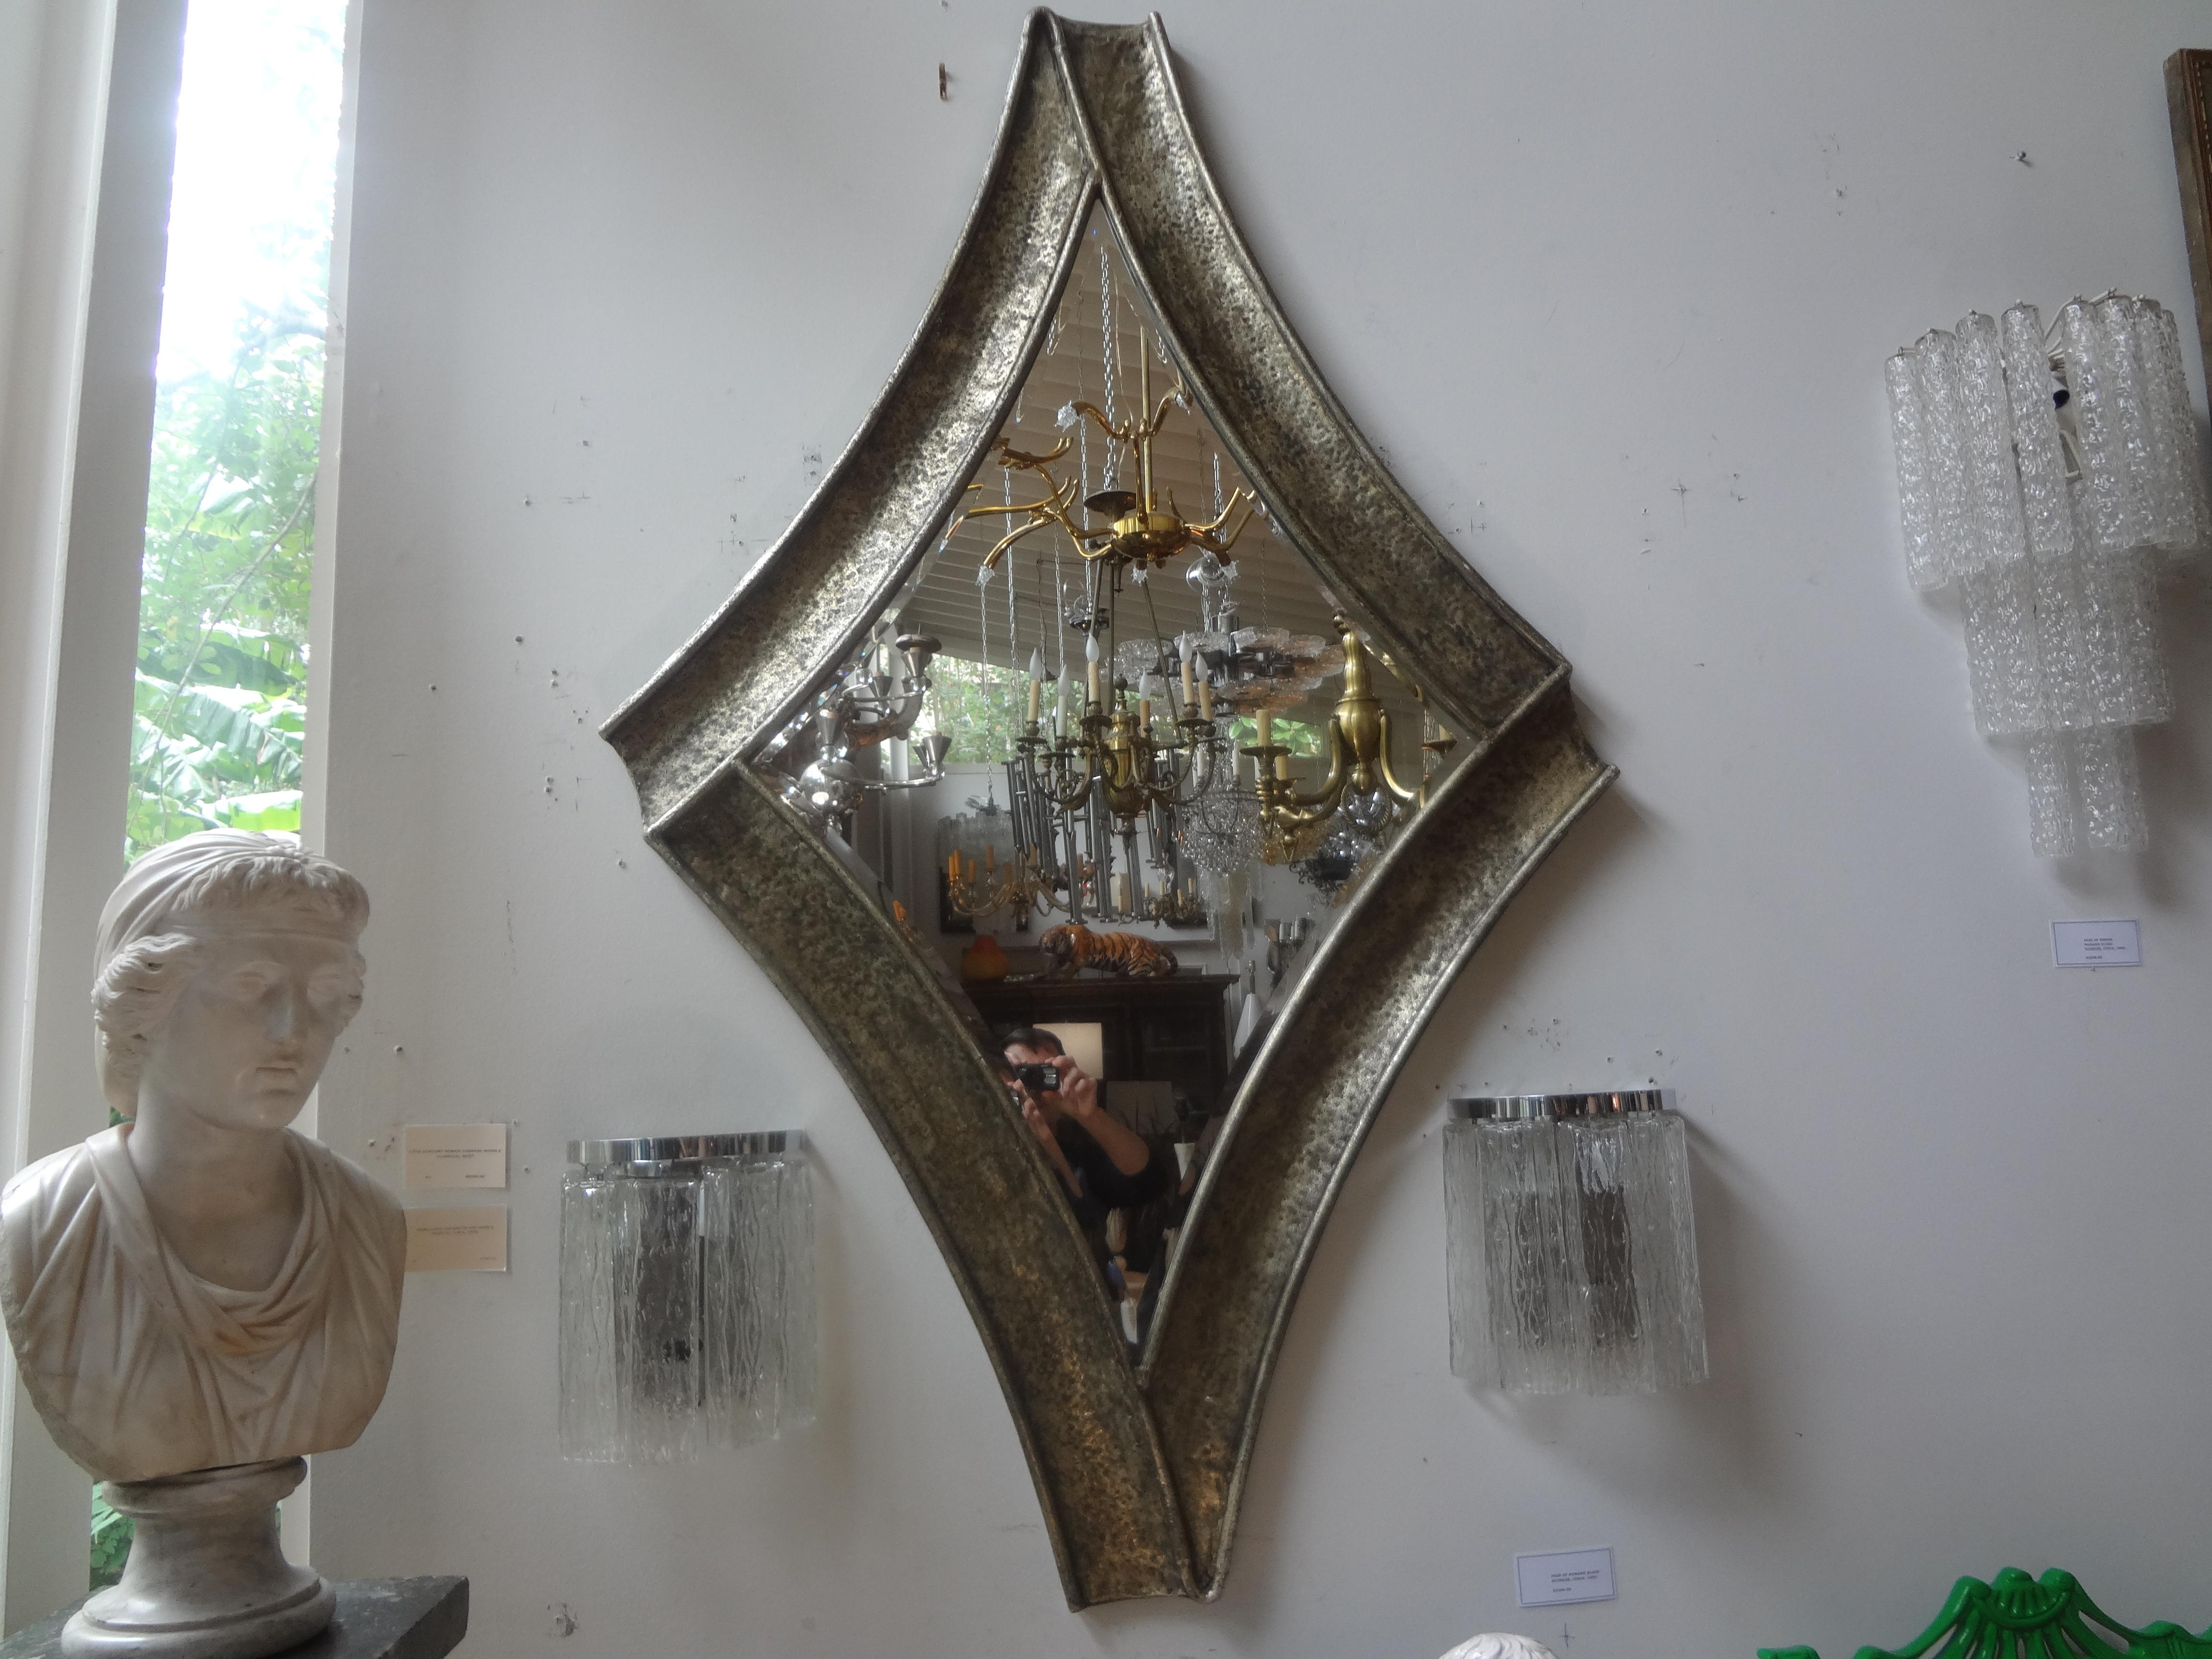 Miroir biseauté en métal martelé de style Brutalist du milieu du siècle dernier.
Miroir biseauté unique en métal martelé de style Brutalist du milieu du siècle dernier. Ce miroir polyvalent peut être utilisé dans une grande variété d'intérieurs.
En